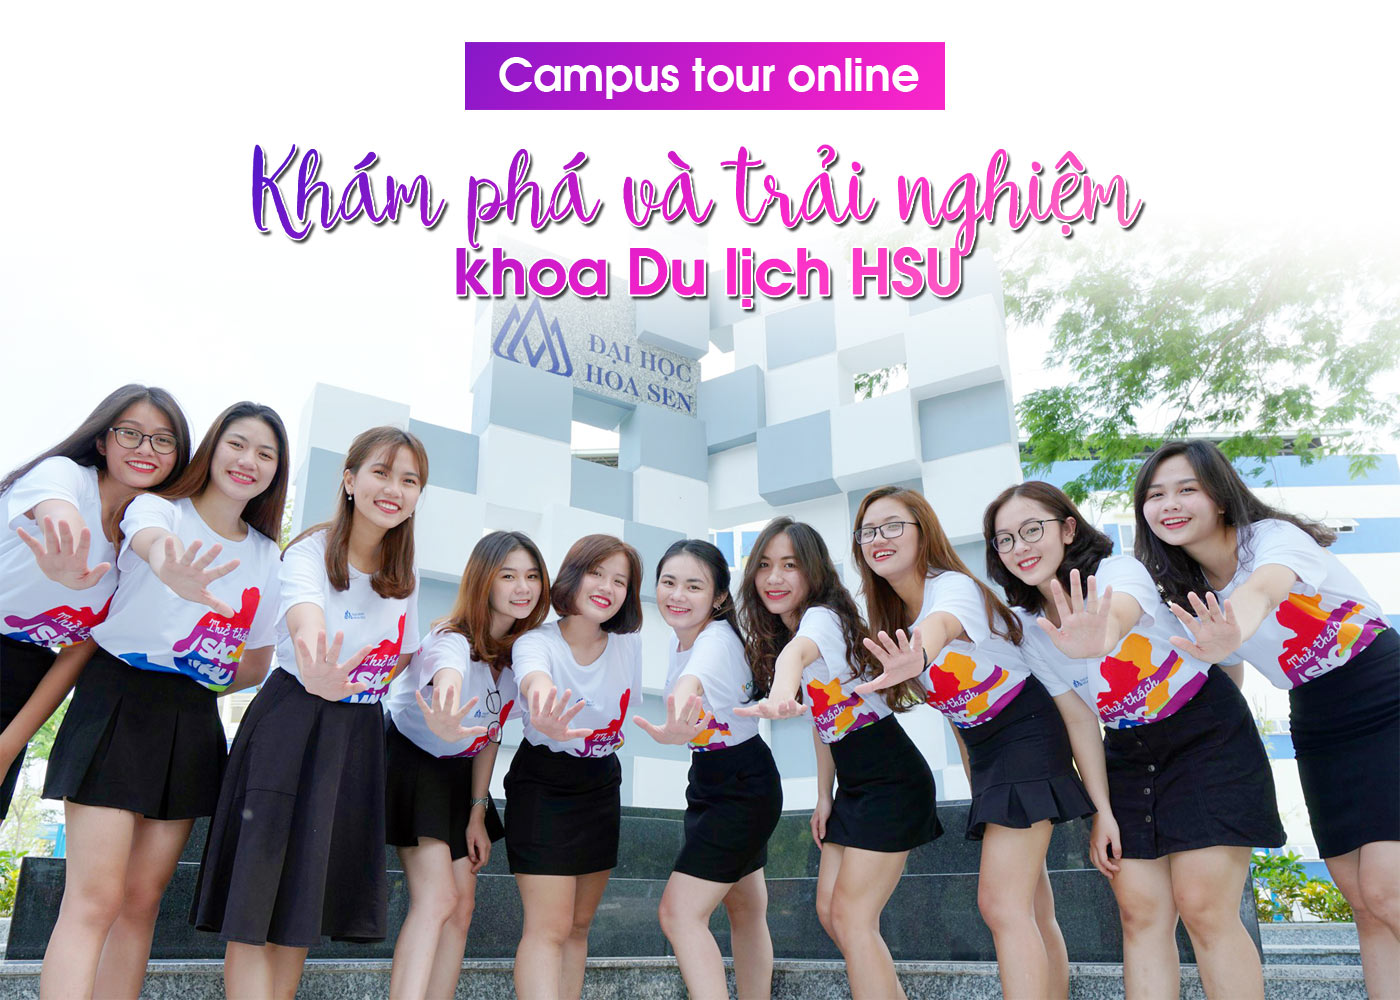 Campus tour online - khám phá và trải nghiệm khoa Du lịch HSU - Ảnh 1